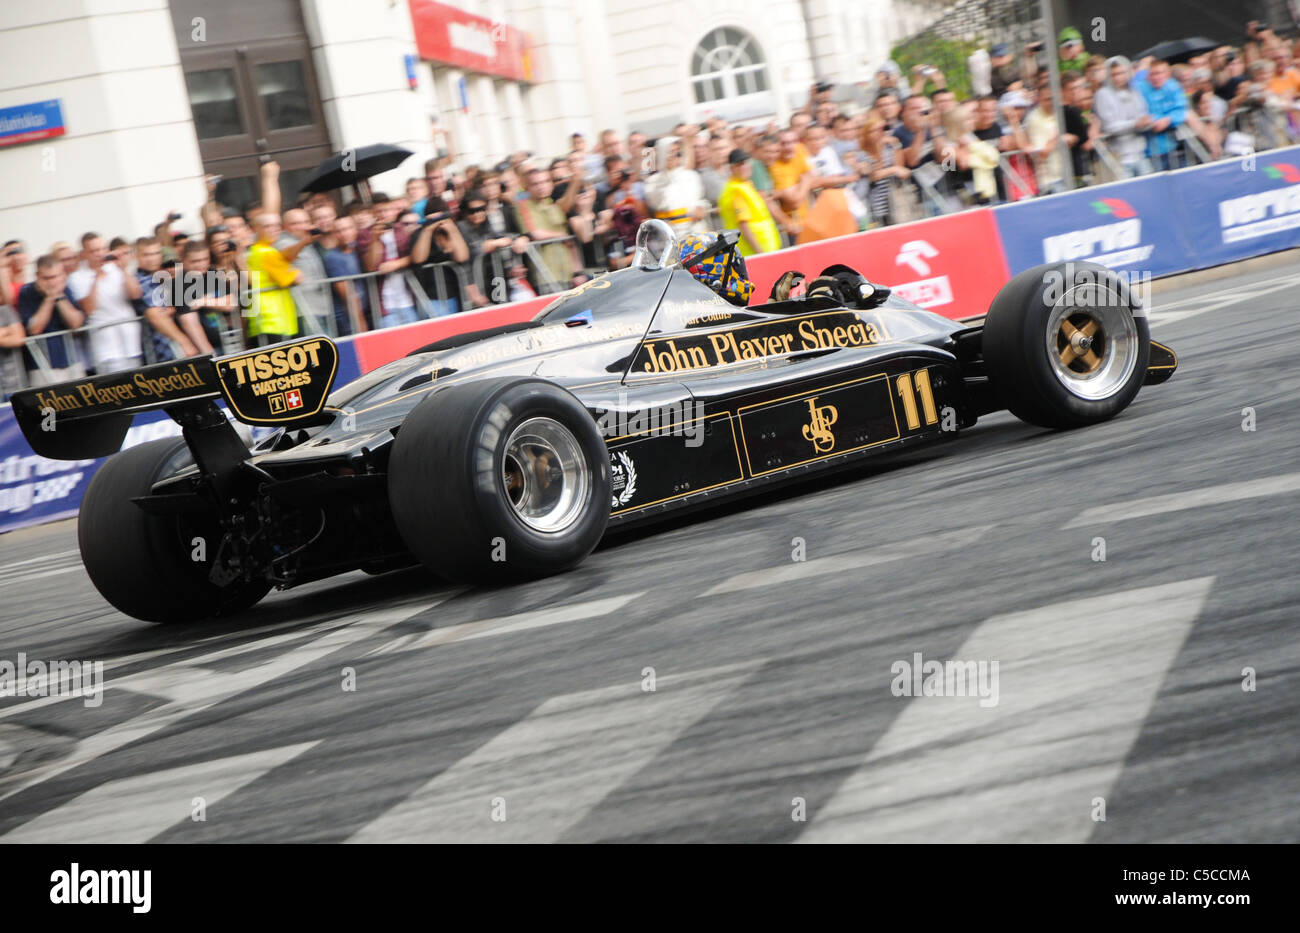 18.06.2011 Warschau, Polen: legendäre Formel1 Rennwagen Lotus 91 während VERVA Racing Street Show Stockfoto